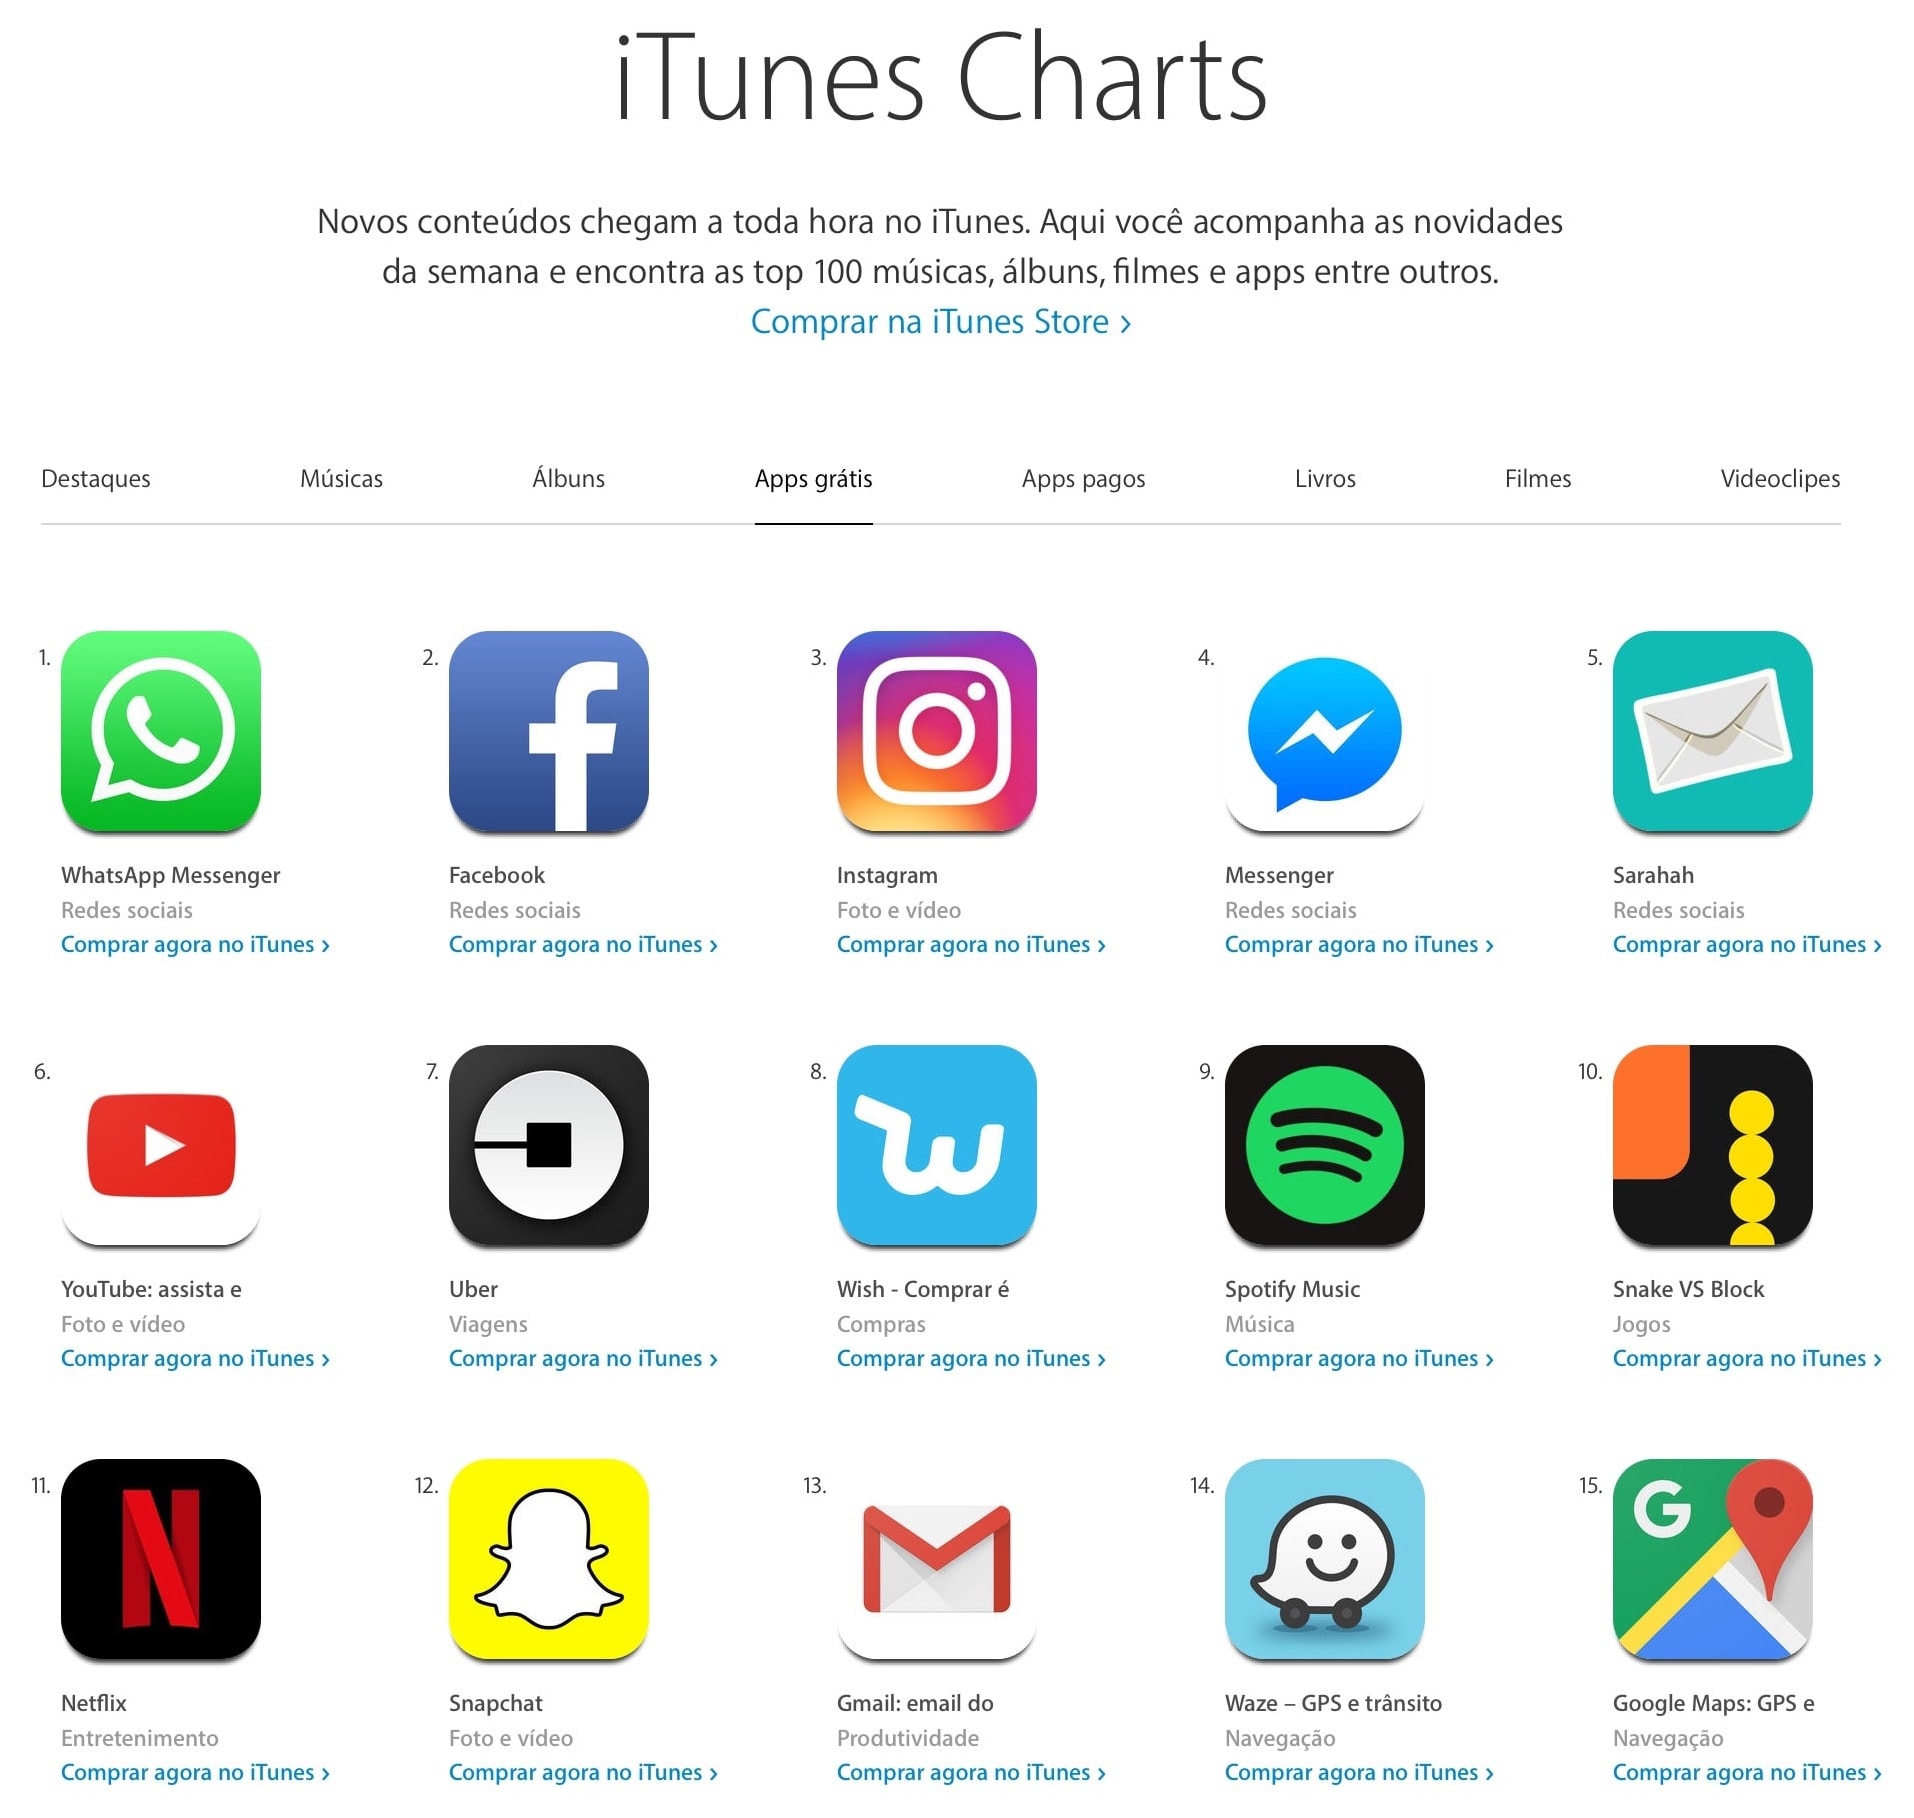 Ranking dos apps grátis mais baixados na App Store